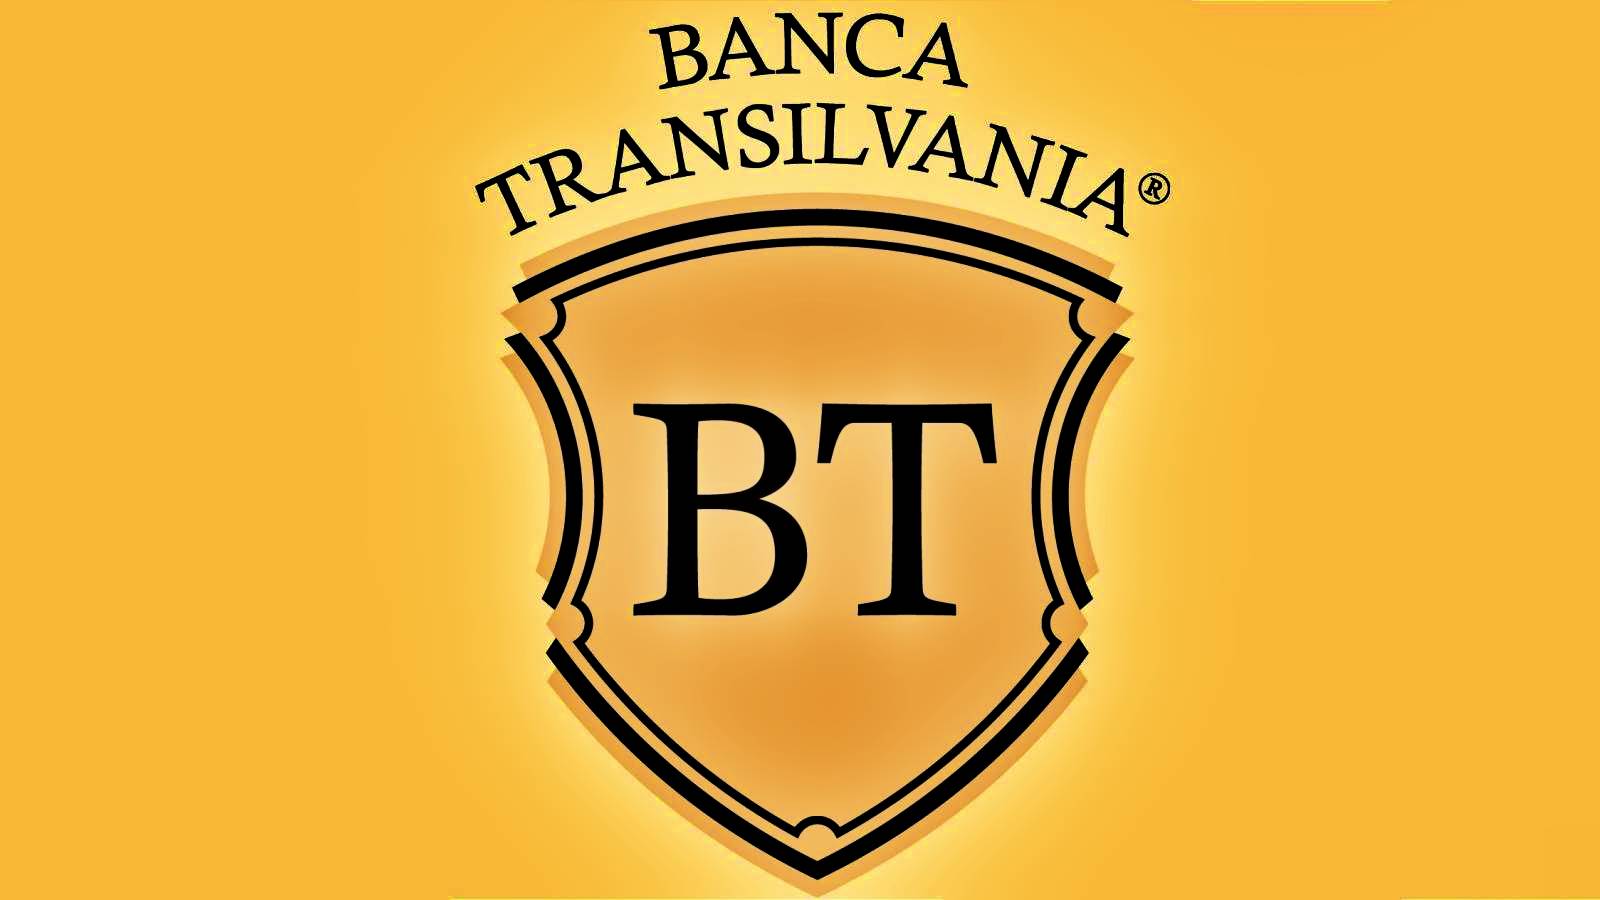 BANCA Transilvania OFICJALNY komunikat skierowany jest do klientów, których nie znali